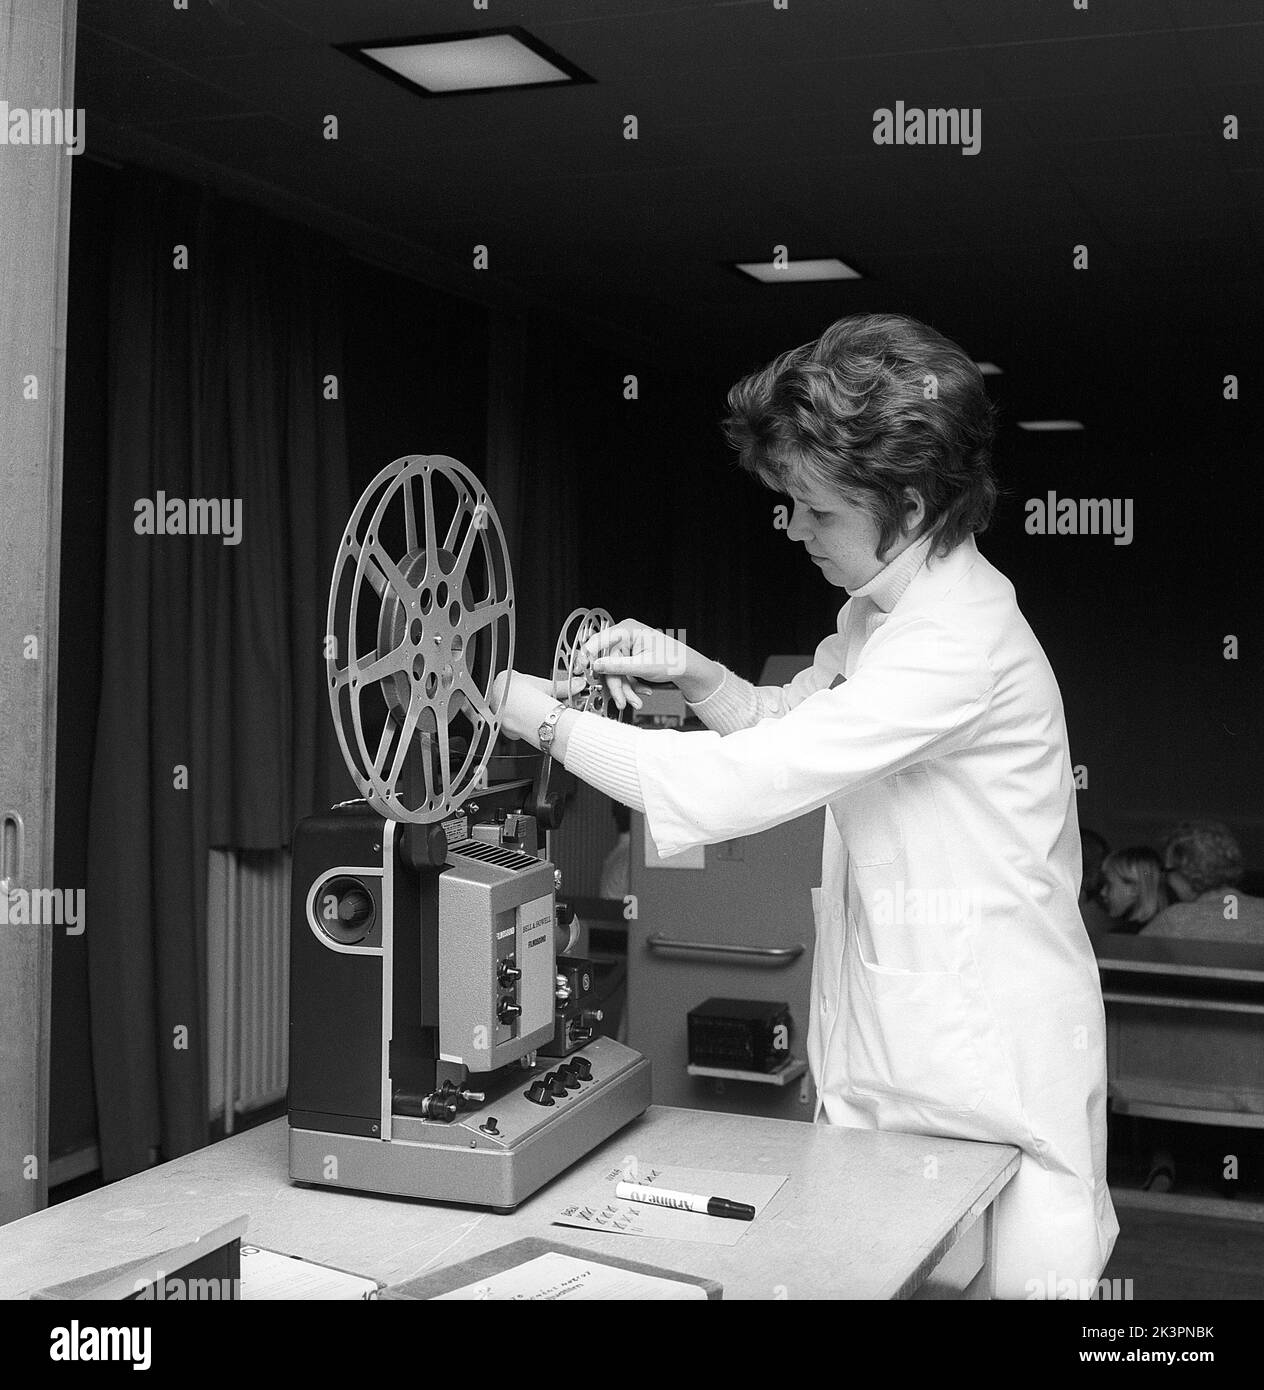 Dans le 1960s. Une jeune femme enseignante avec un projecteur de film, le montage du rouleau de film. Parfois, des courts-métrages ont été projetés dans la salle de classe ou dans une salle de visionnement spéciale, non seulement pour des spectacles éducatifs mais aussi pour le divertissement. Le film avait du son. Une fois que le rouleau de film a été vu, le film a été enroulé sur un rouleau récepteur et a dû être retourné. Suède 1968 réf. CV77 Banque D'Images